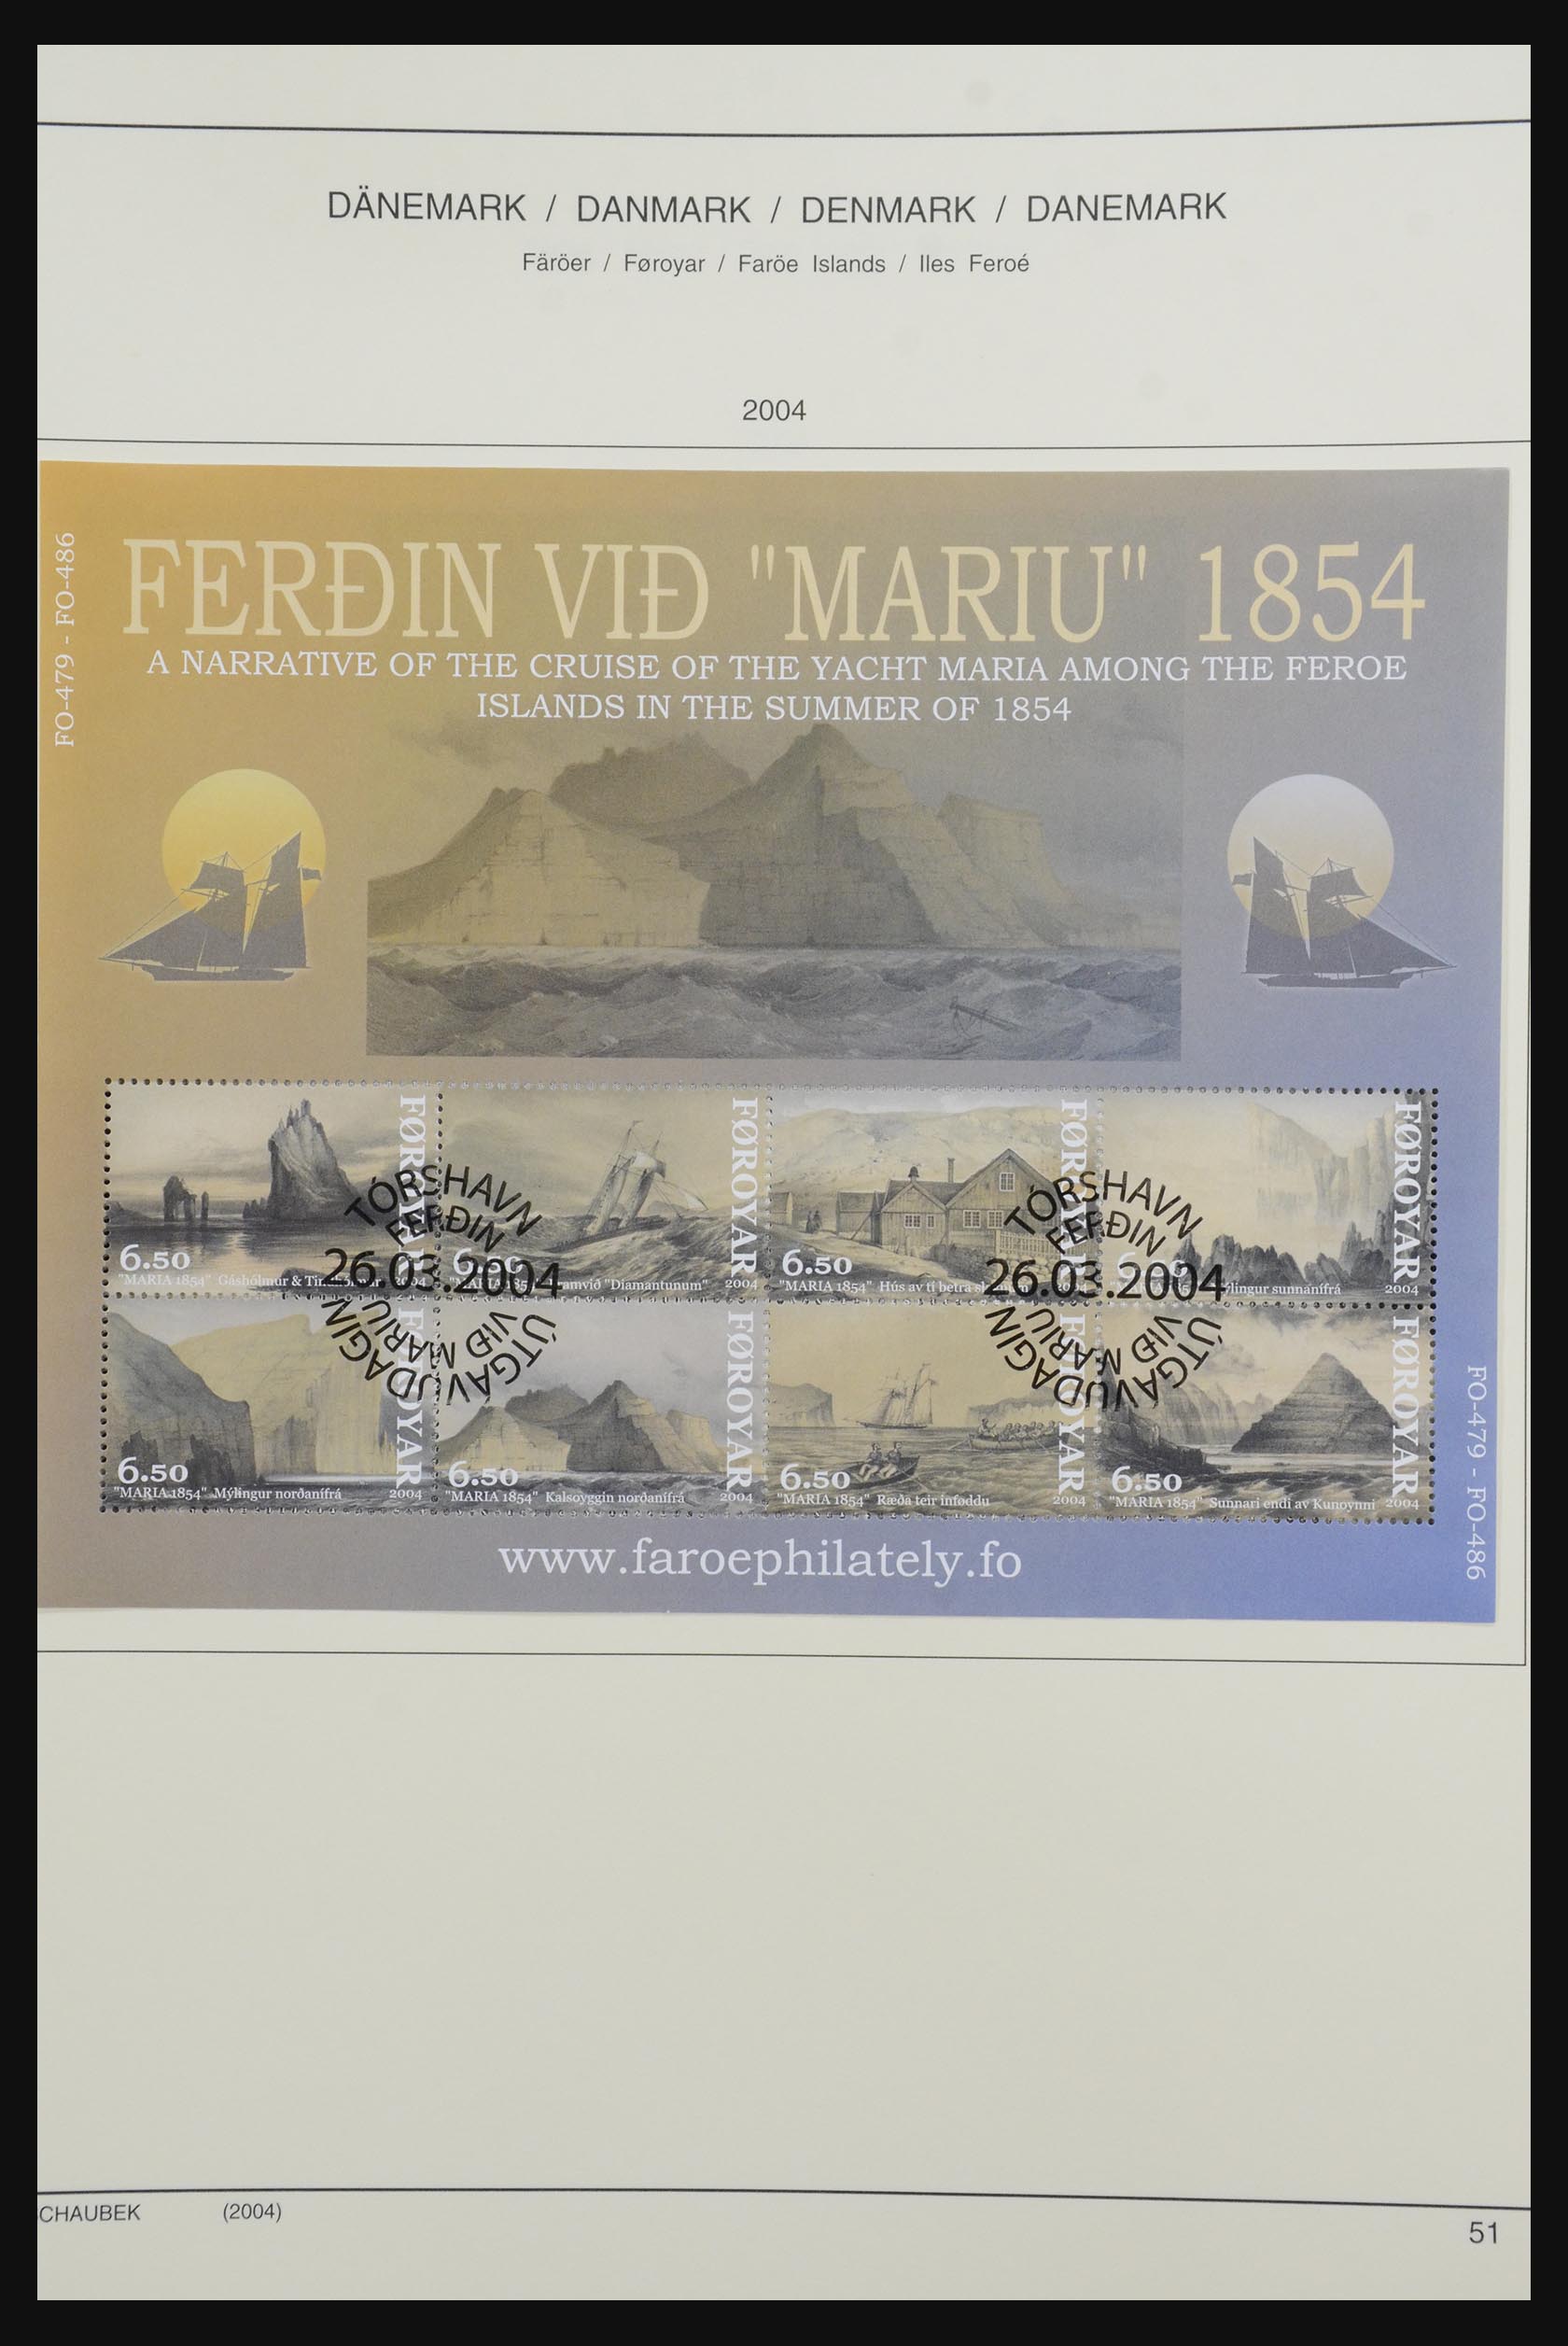 32310 065 - 32310 Faroe Islands 1919-2005.